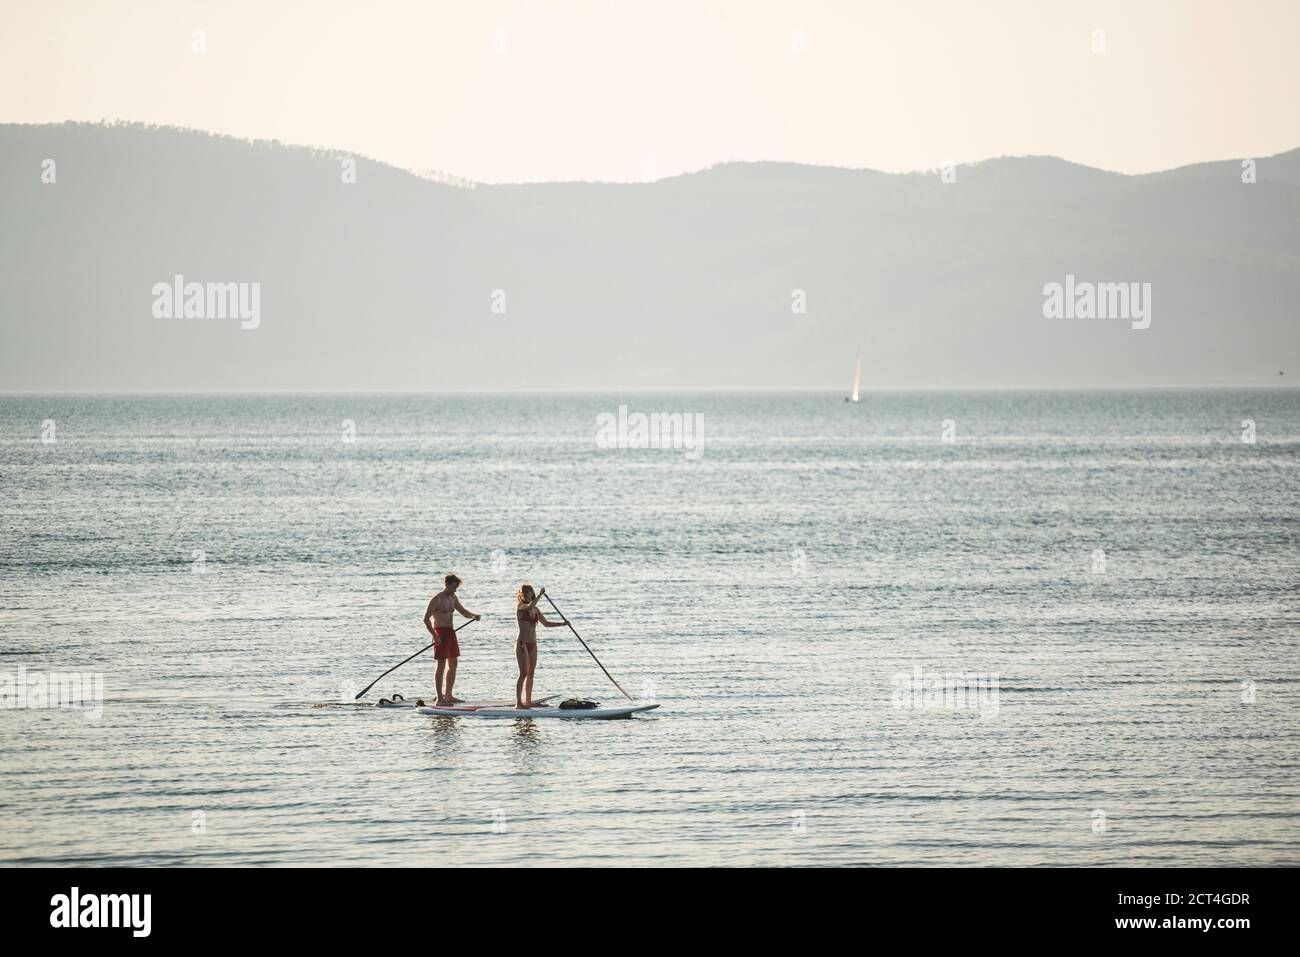 Montez paddle-board sur le lac Bracciano au coucher du soleil, Aguillara Sabazia, province de Rome, Italie, arrière-plan avec espace copie Banque D'Images